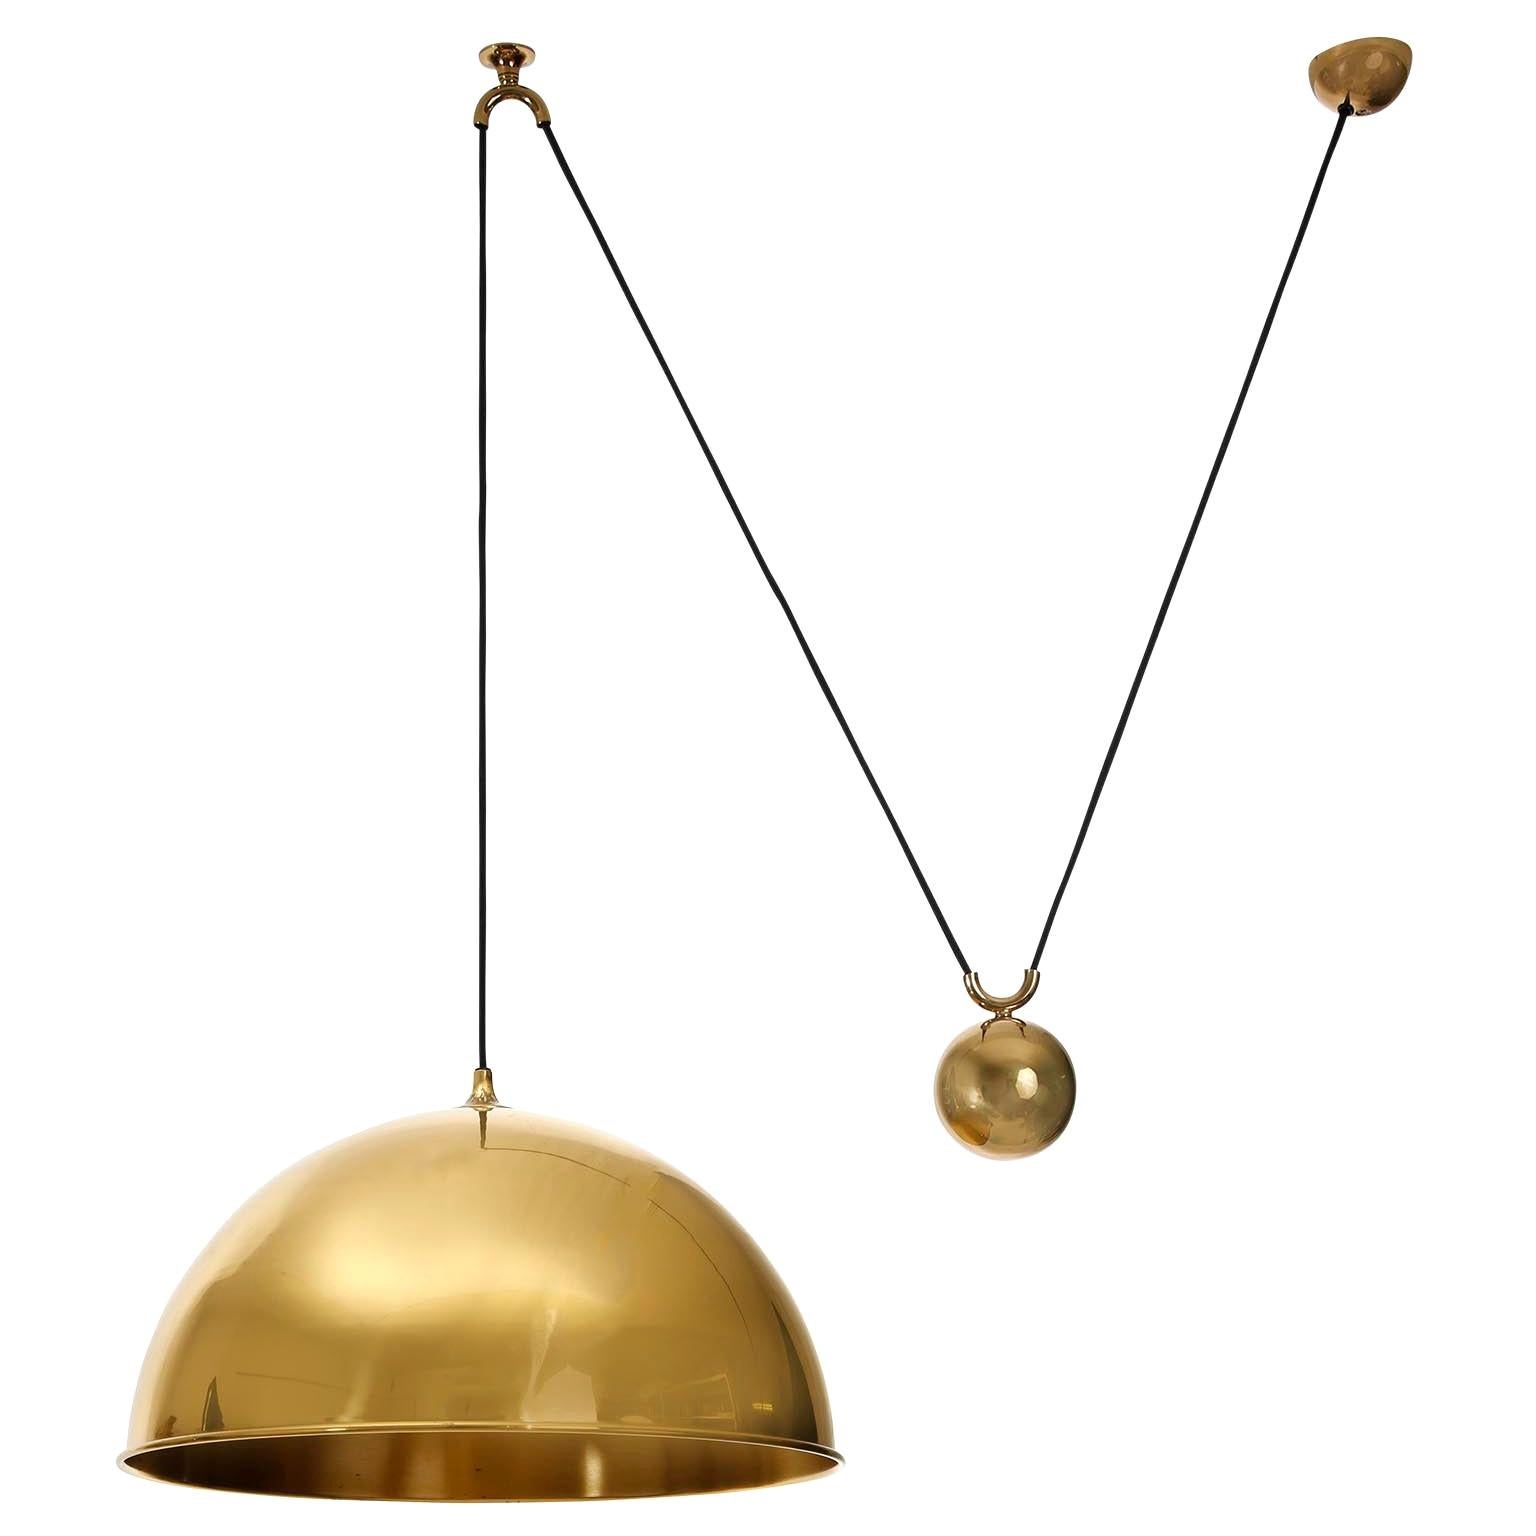 Florian Schulz Dome Pendant Light, Brass Counterweight Counter Balance, 1970